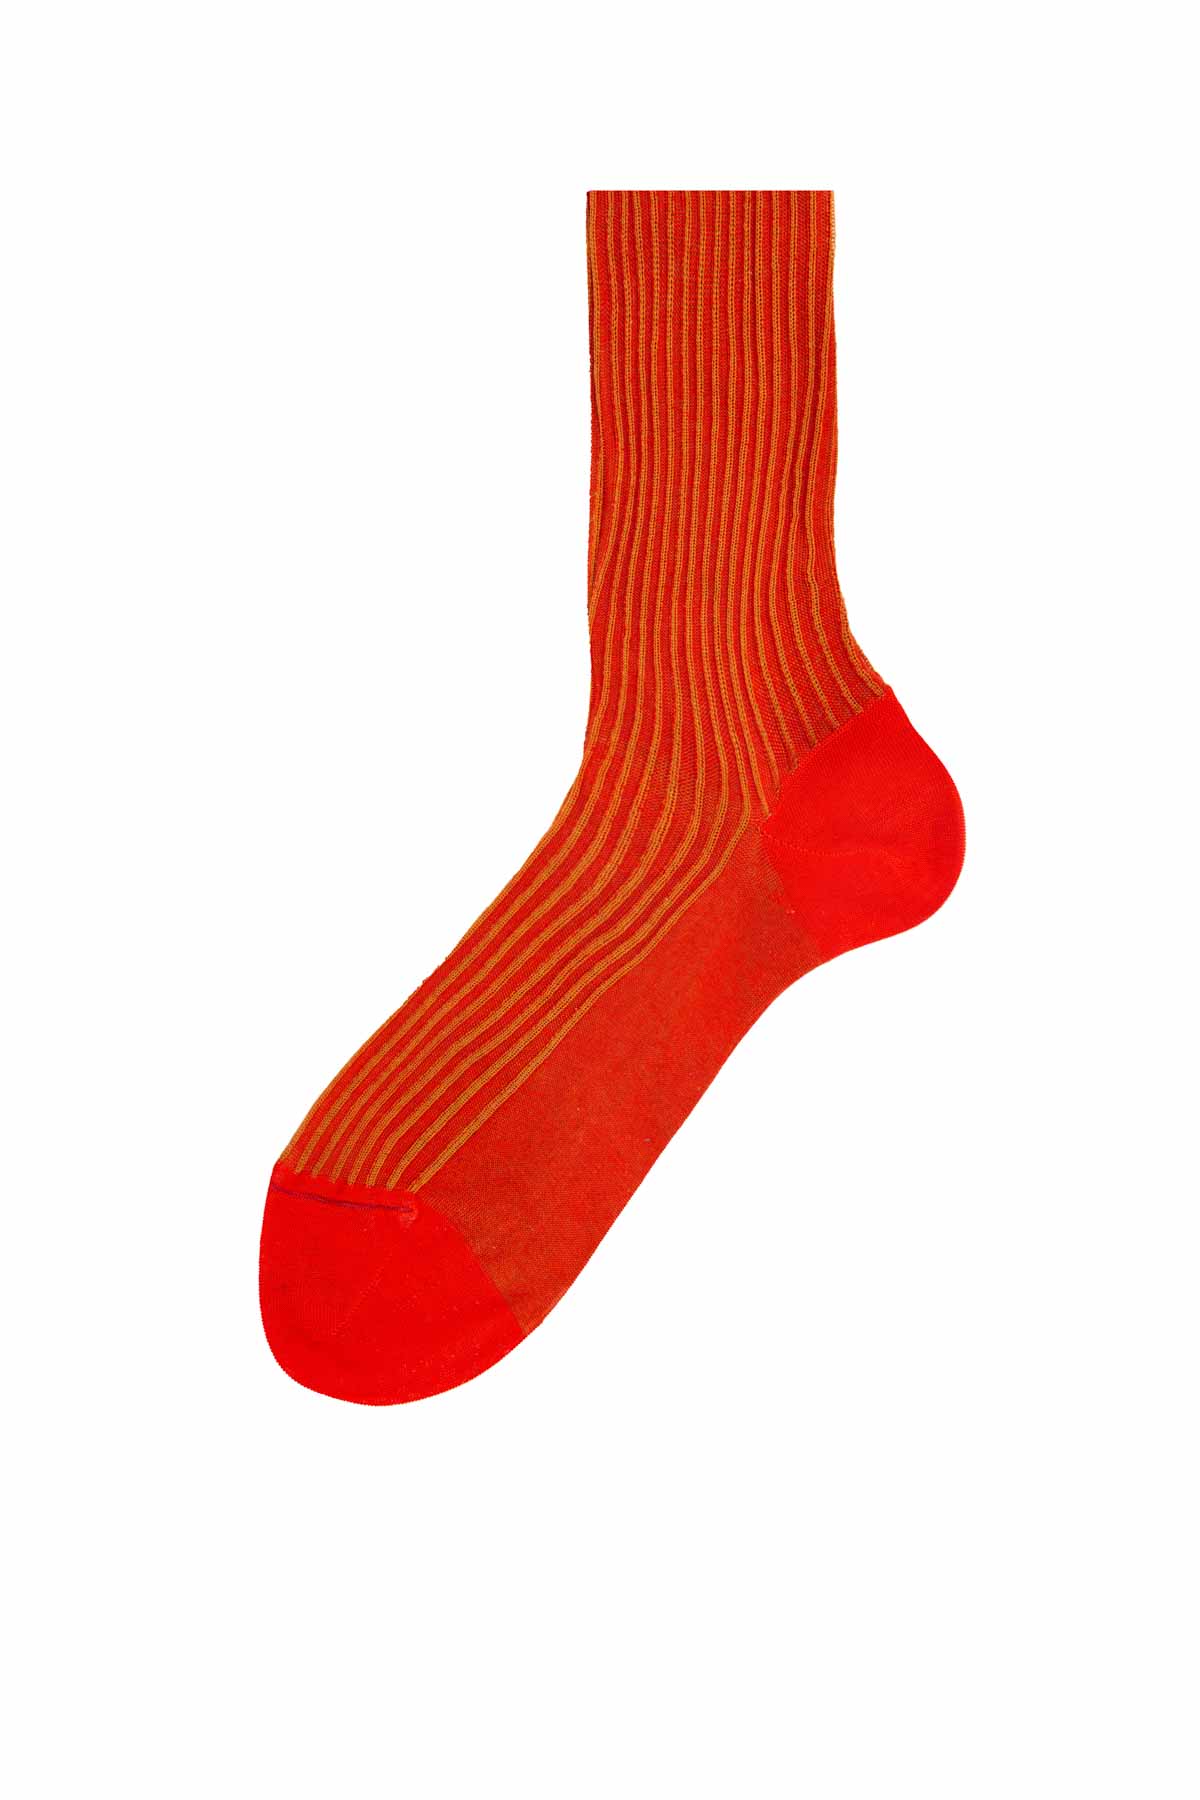 Italian Ribbed Socks - Red & Mustard